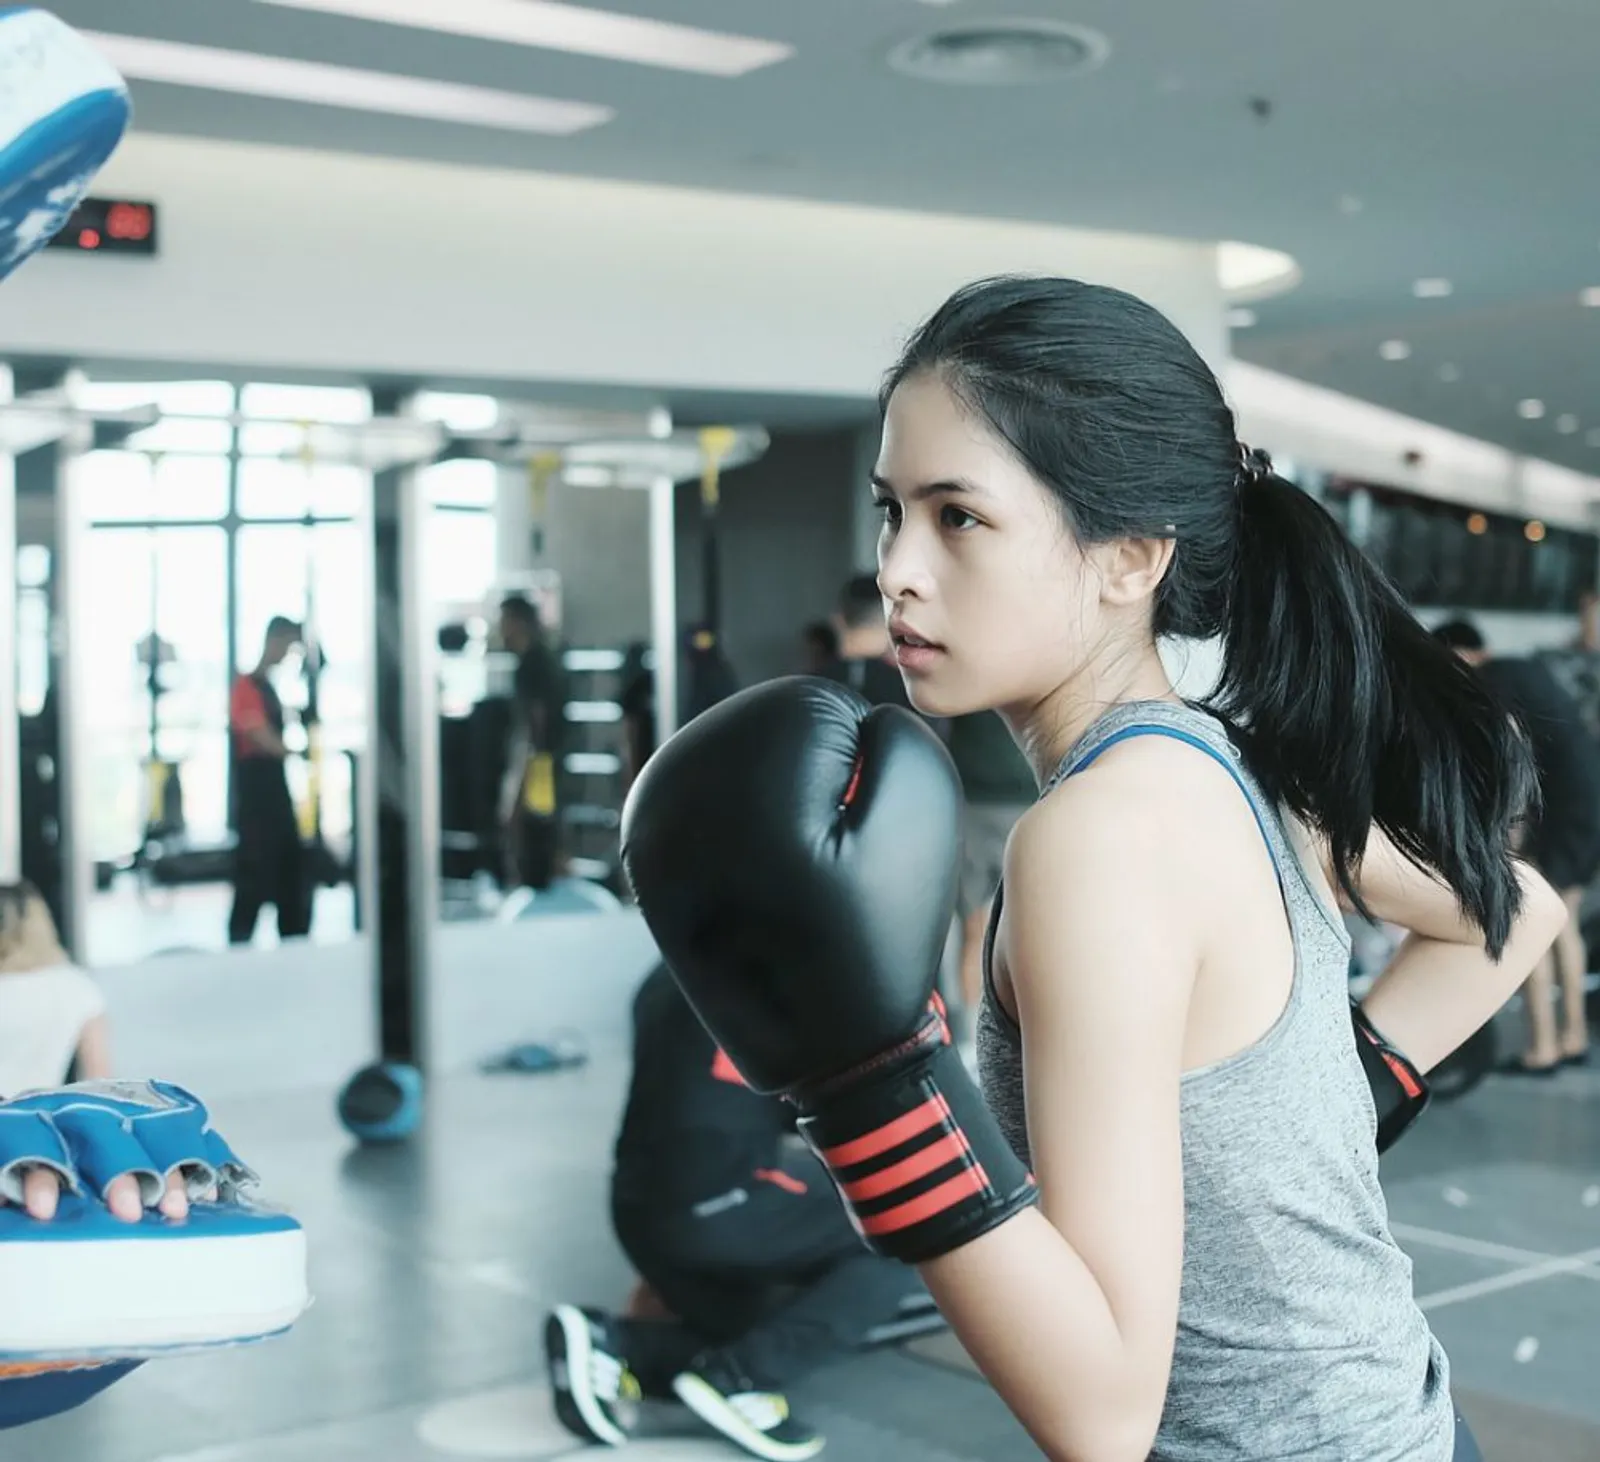 Intip Gaya Seksi Artis Indonesia saat Olahraga di Gym